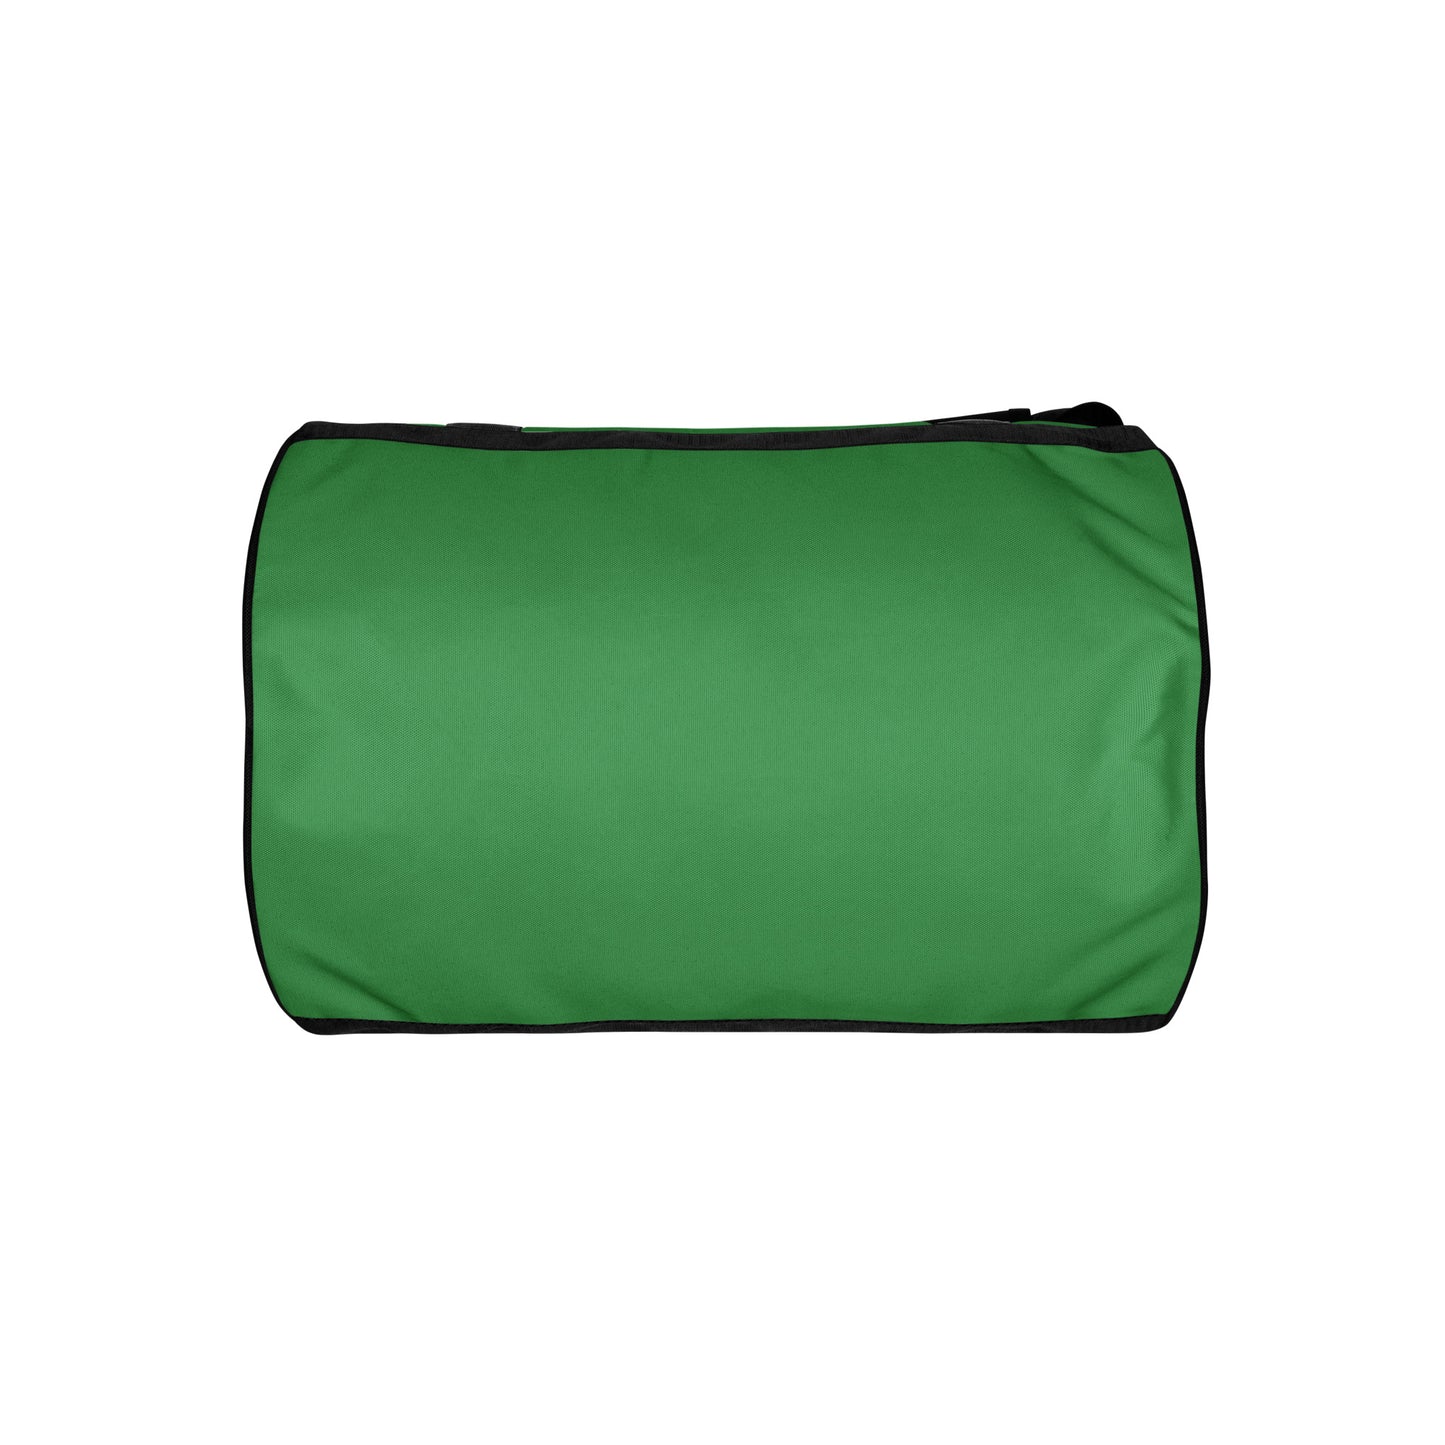 My F***ing Legs - Gym Bag (Emerald)